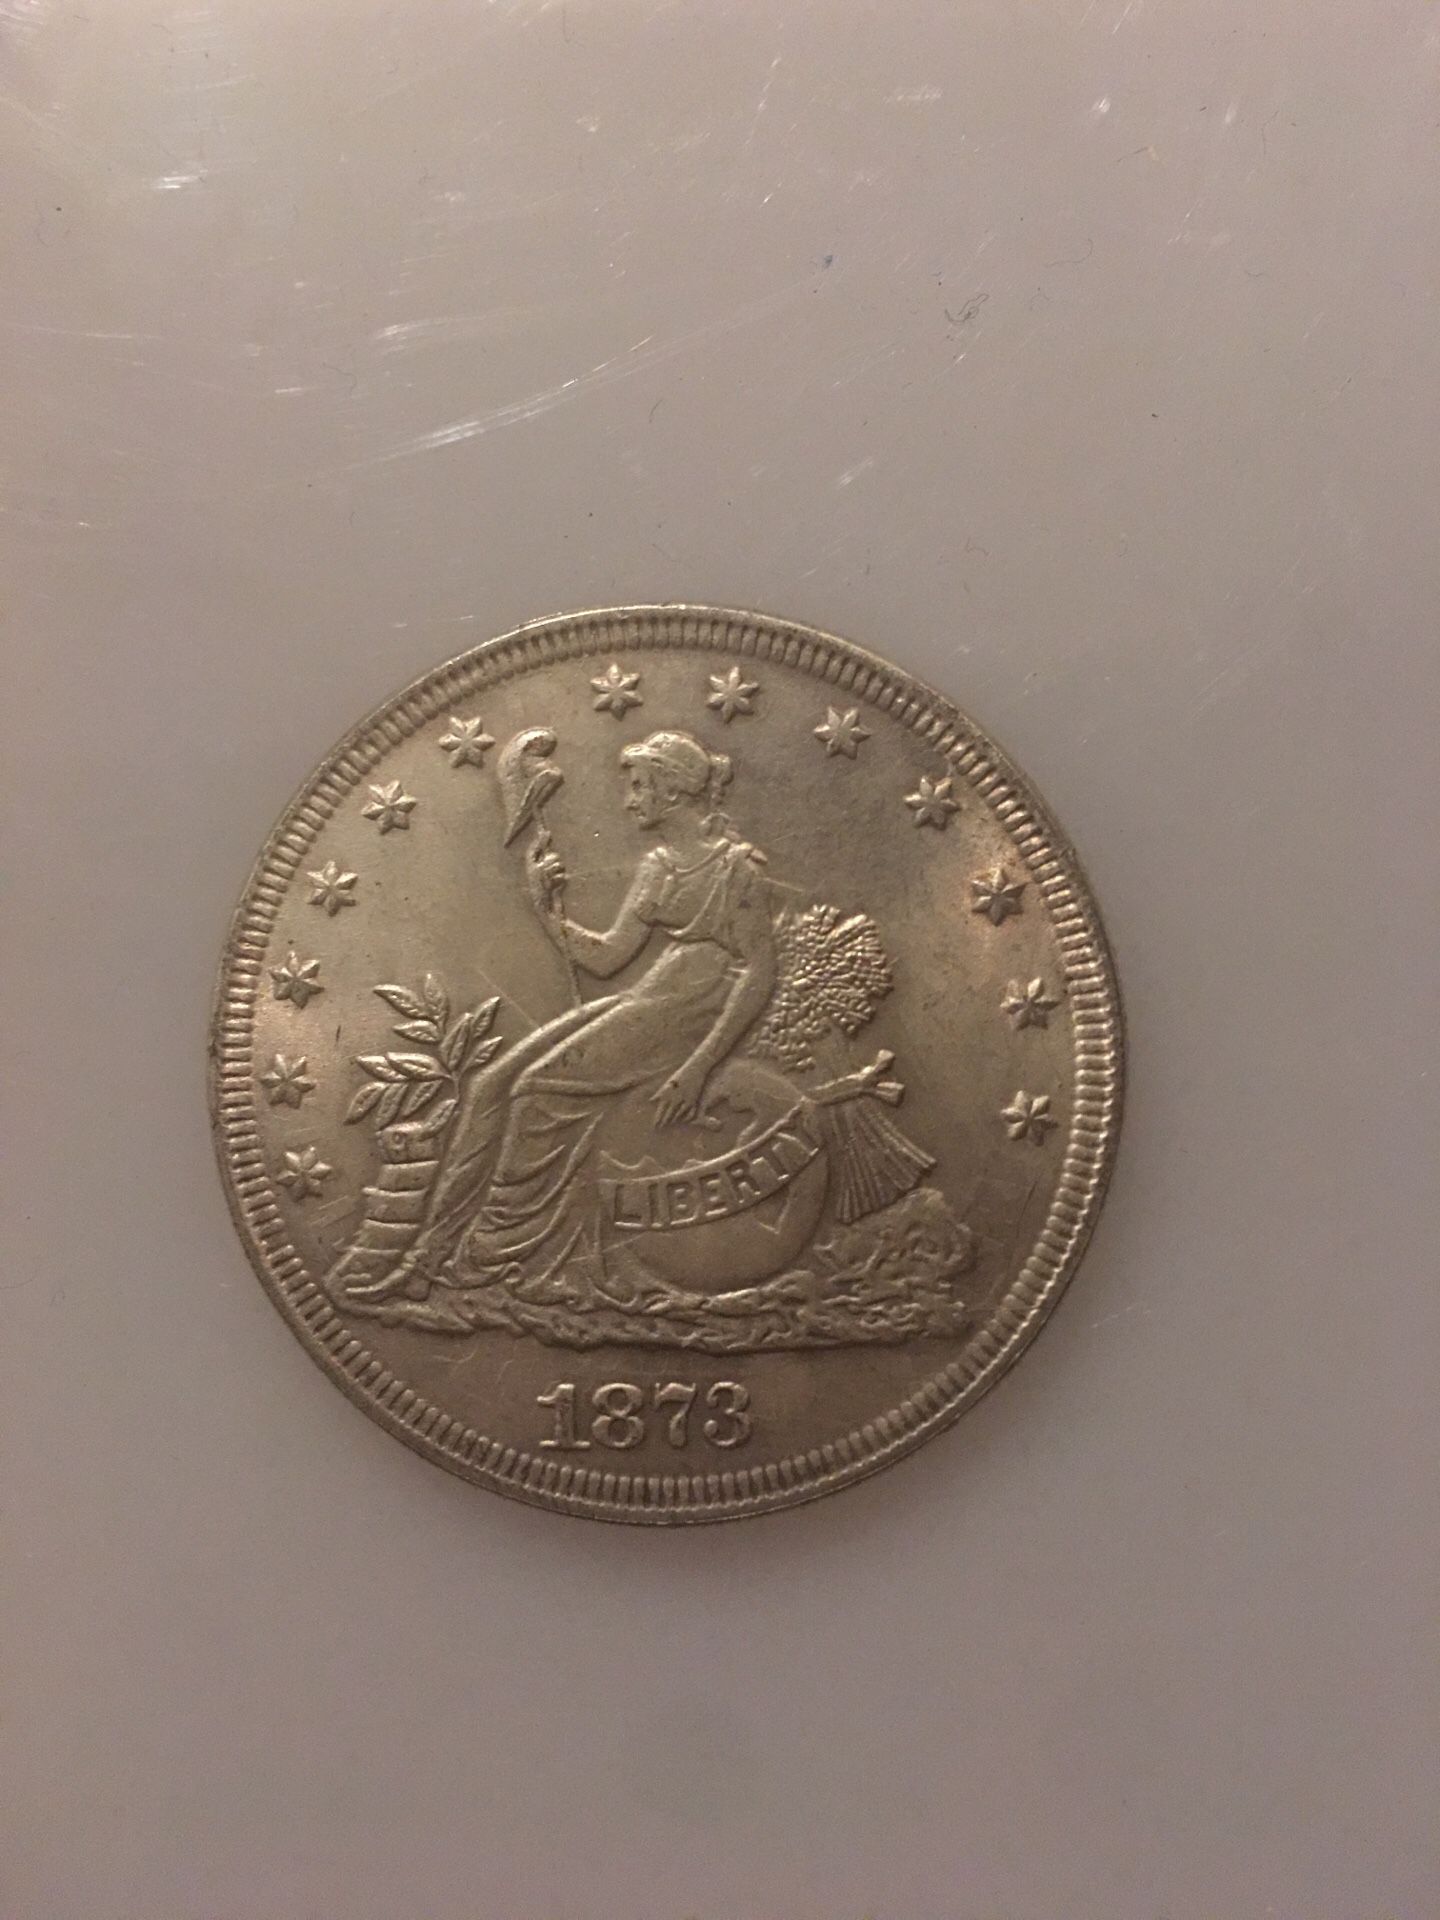 Morgan coin